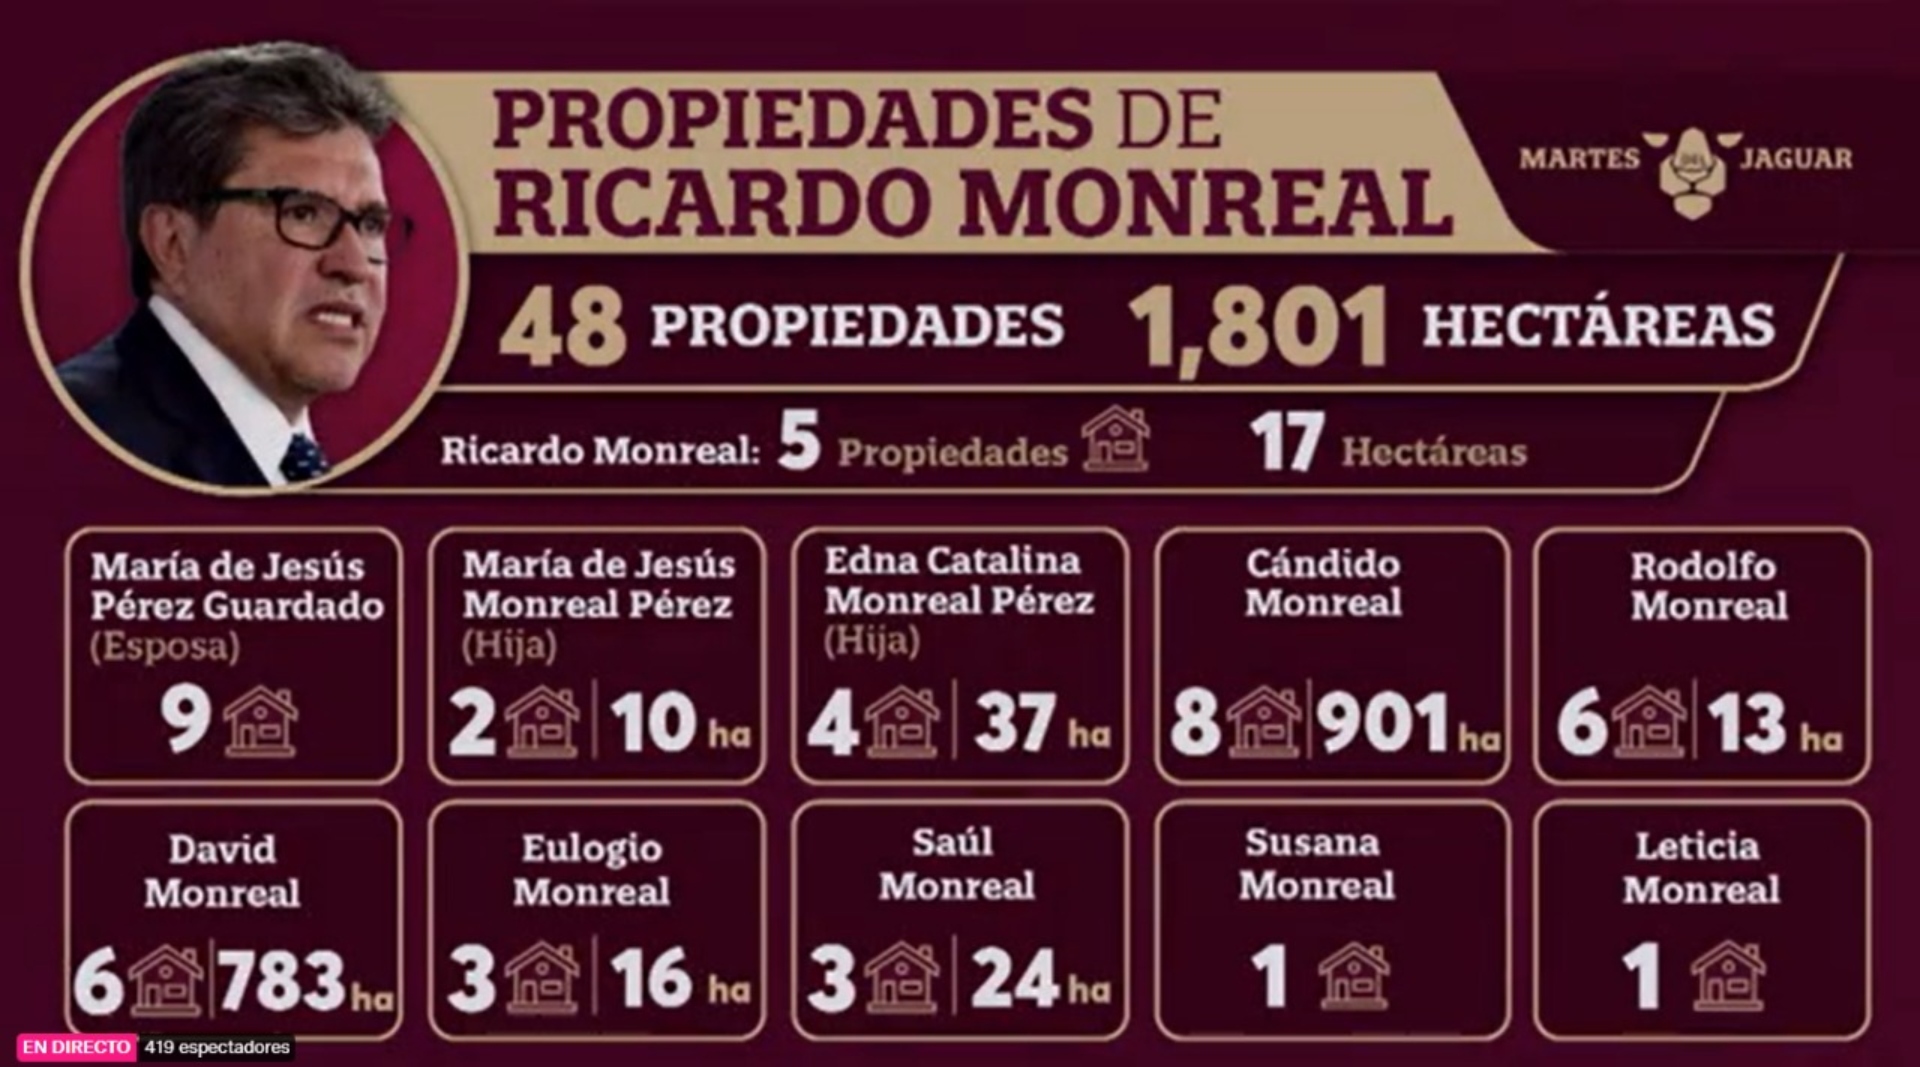 Según la información presentada por Sansores, Ricardo Monreal tiene 5 propiedades a su nombre que suman un total de 17 hectáreas. (Captura: Facebook/Layda Sansores)